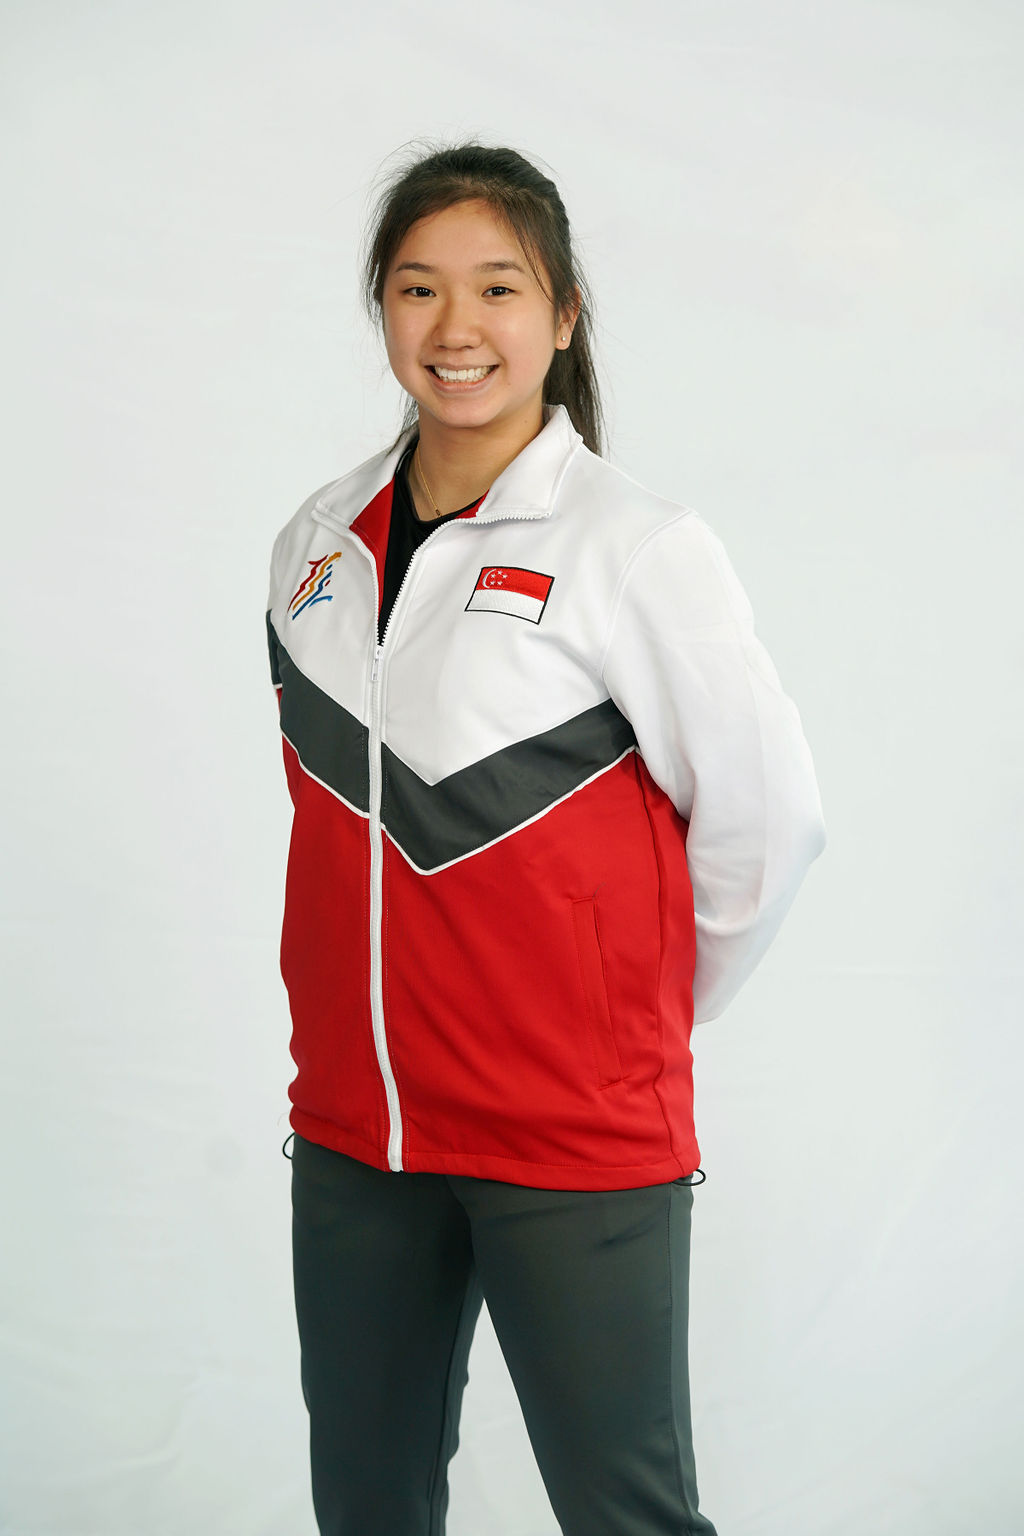 Isabel Chua Xin Ting